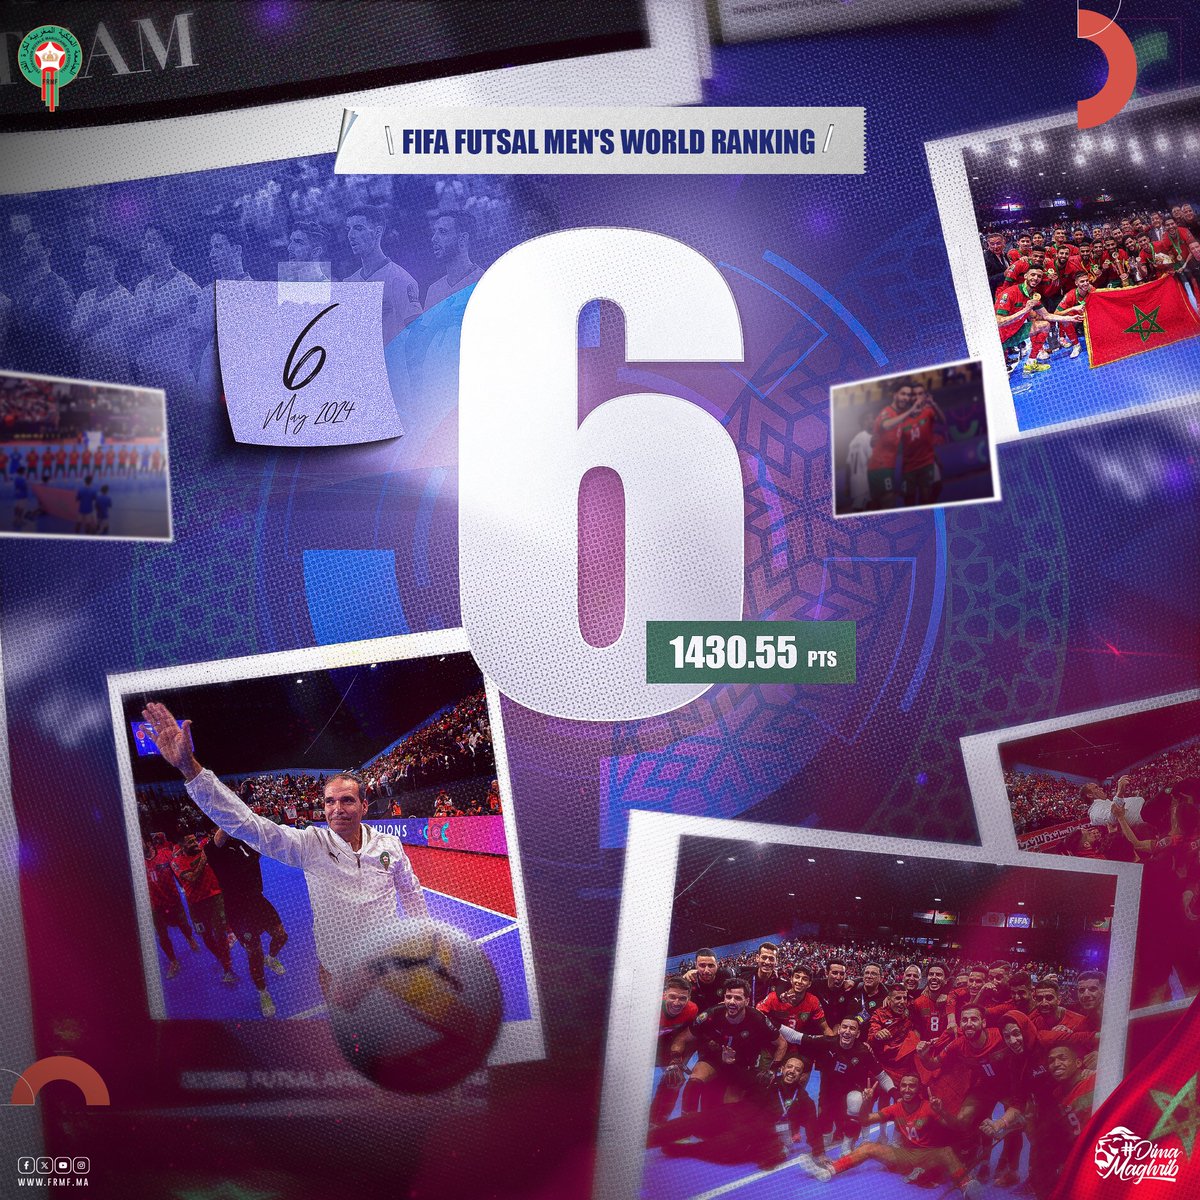 المنتخب الوطني لكرة القدم داخل القاعة سادس عالميا في أول تصنيف رسمي تصدره الفيفا 💪🏻 Our National Futsal Team is placed 6️⃣ worldwide in the first-ever FIFA Futsal World Rankings 🌍